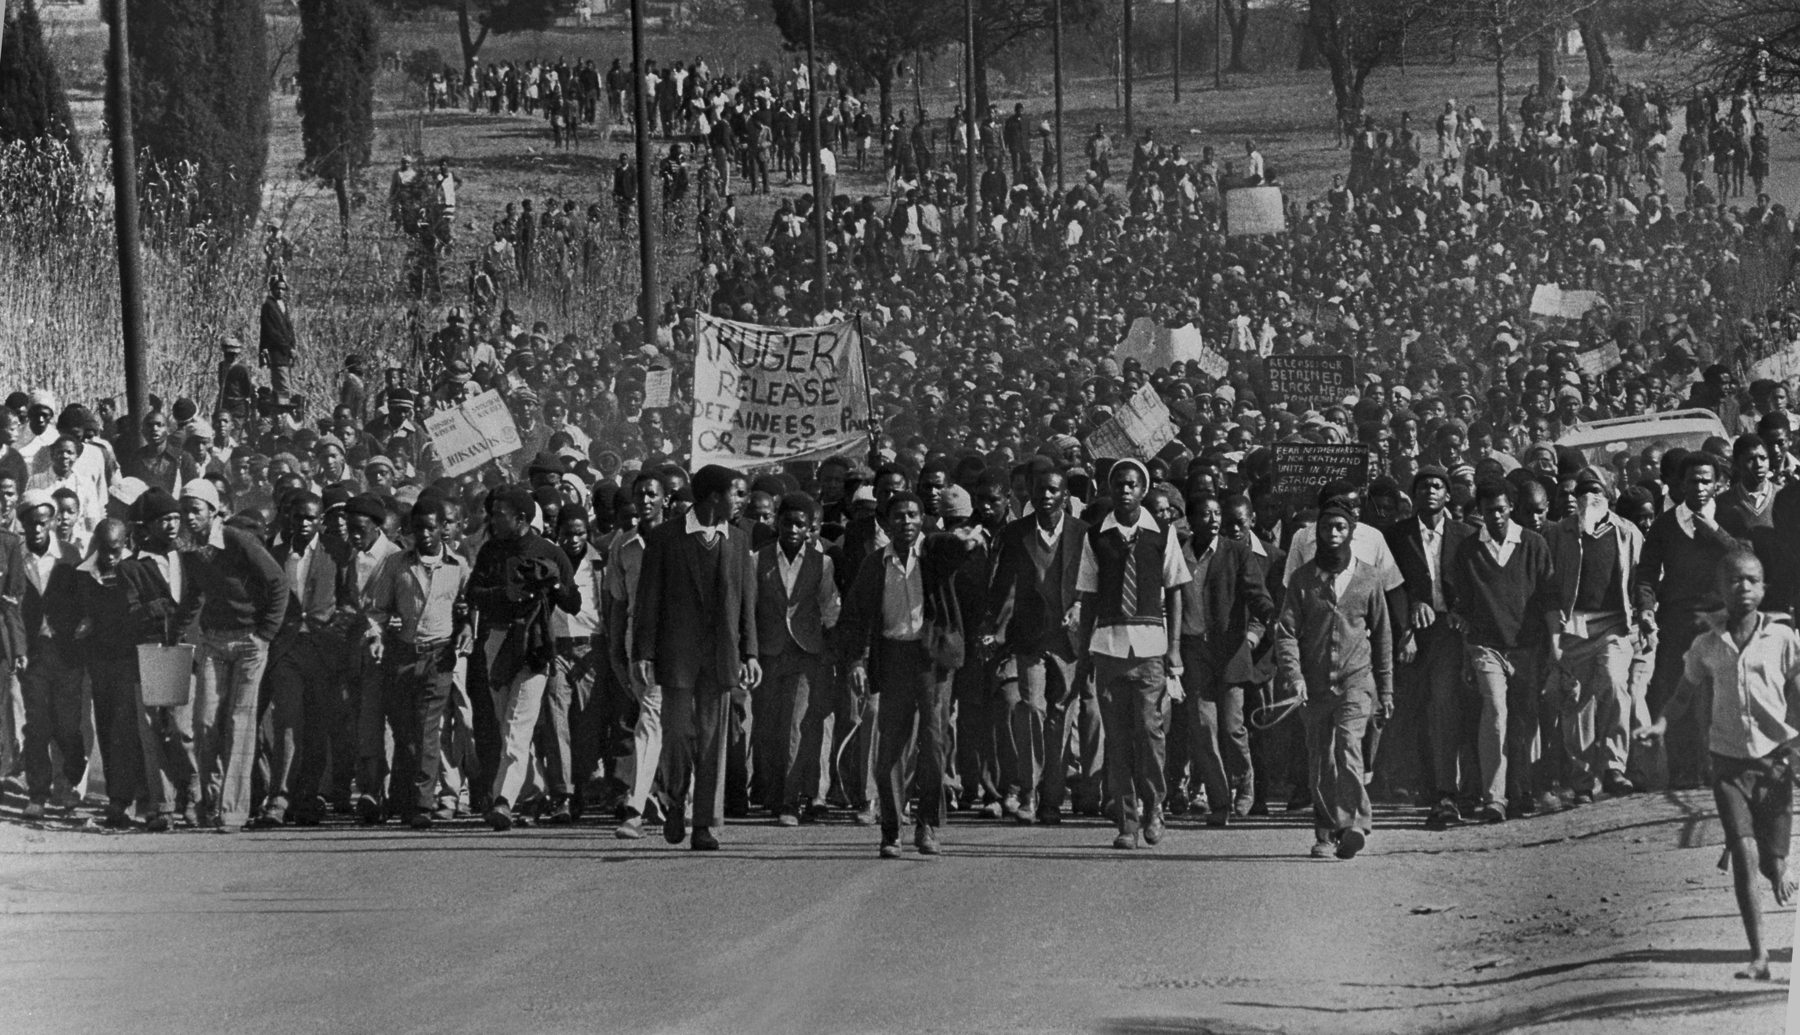 Fotografia em preto e branco. Manifestação de estudantes. Multidão em uma rua larga carregando cartazes.